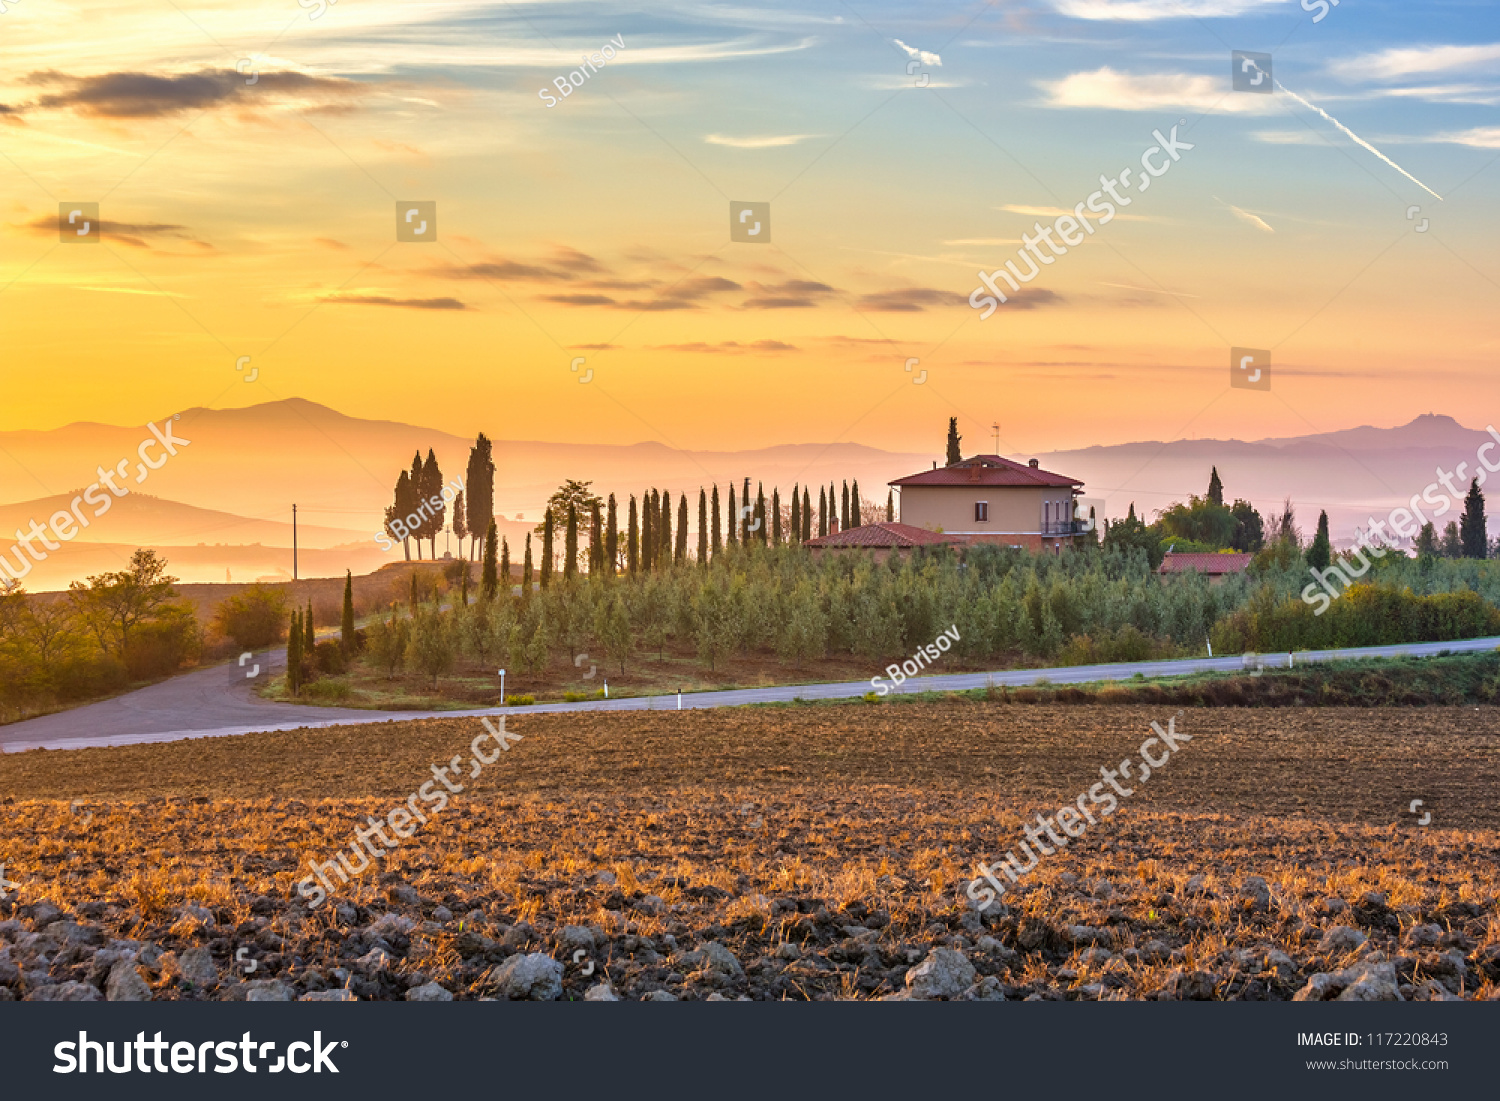 Tuscany Landscape At Sunrise, Italy Stock Photo 117220843 ...